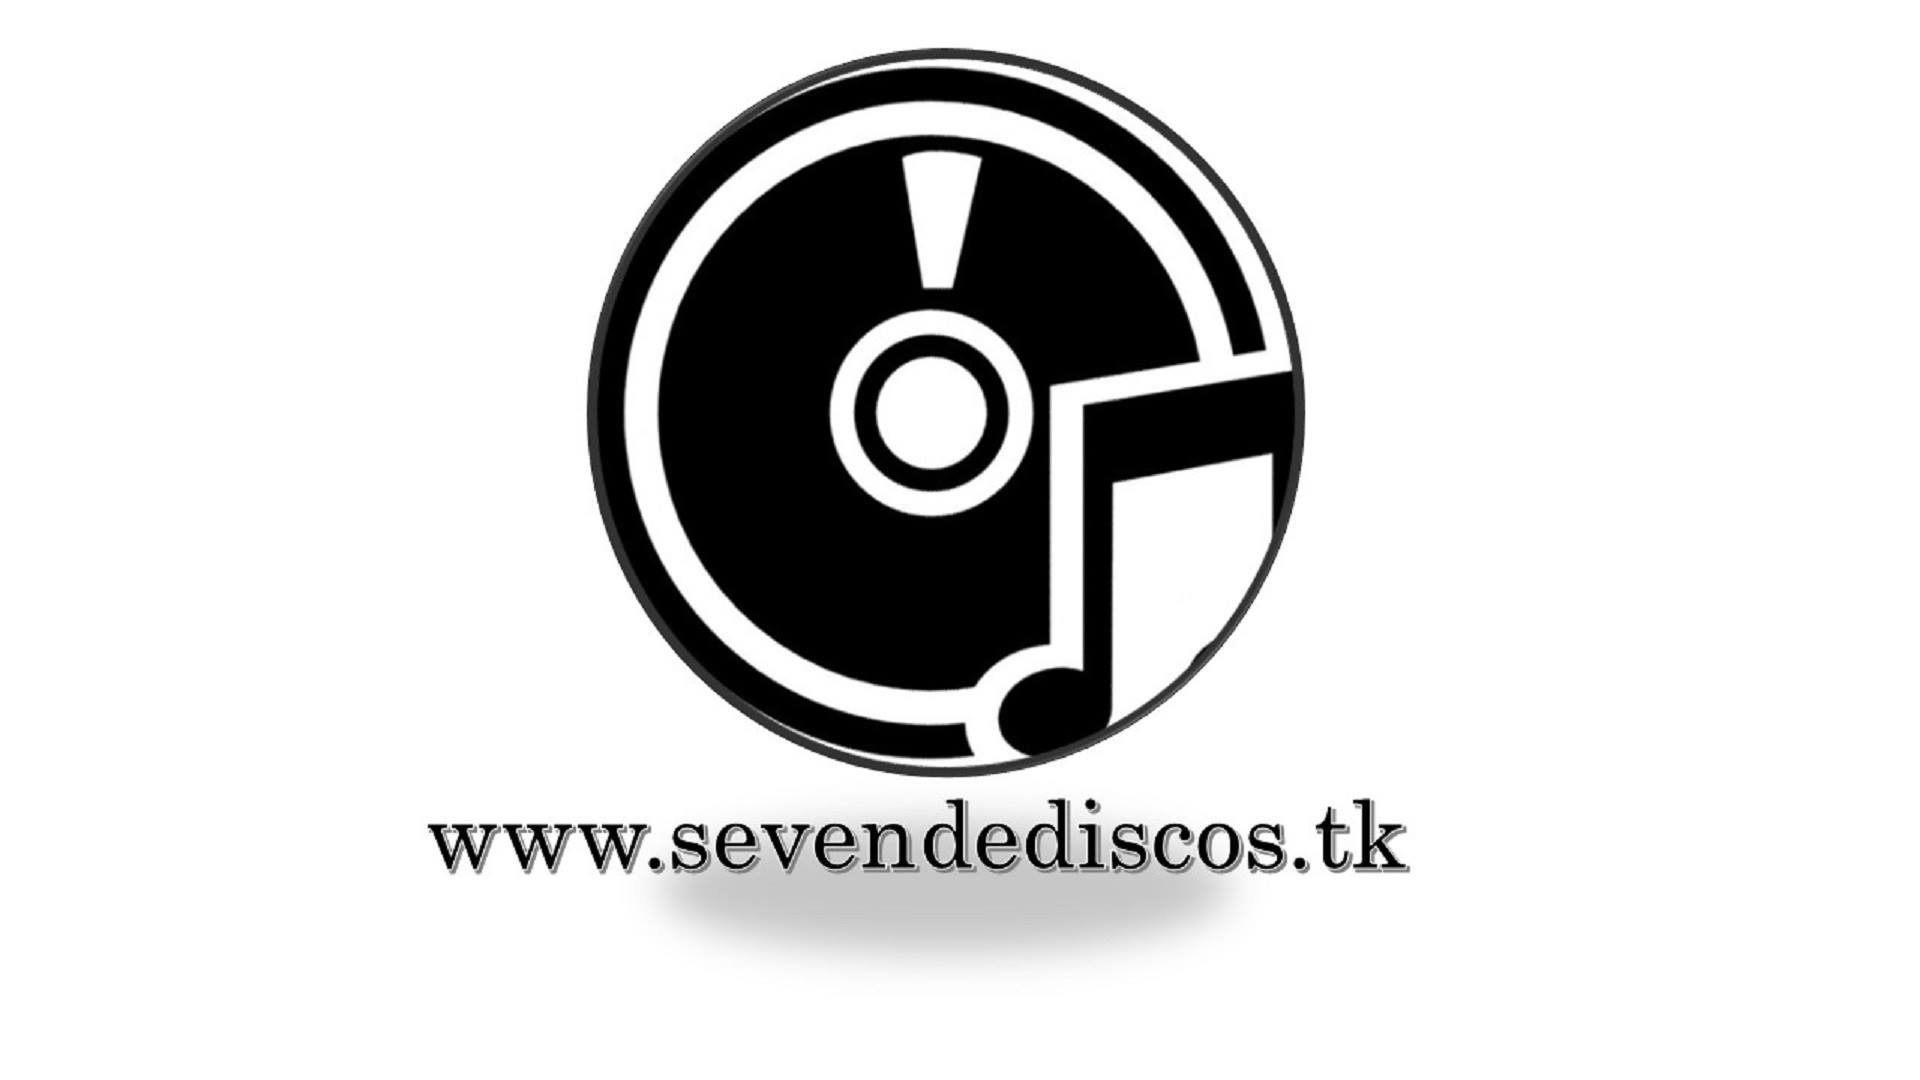 Venta de discos ONLINE en webs sevendediscos.tk thumbnail